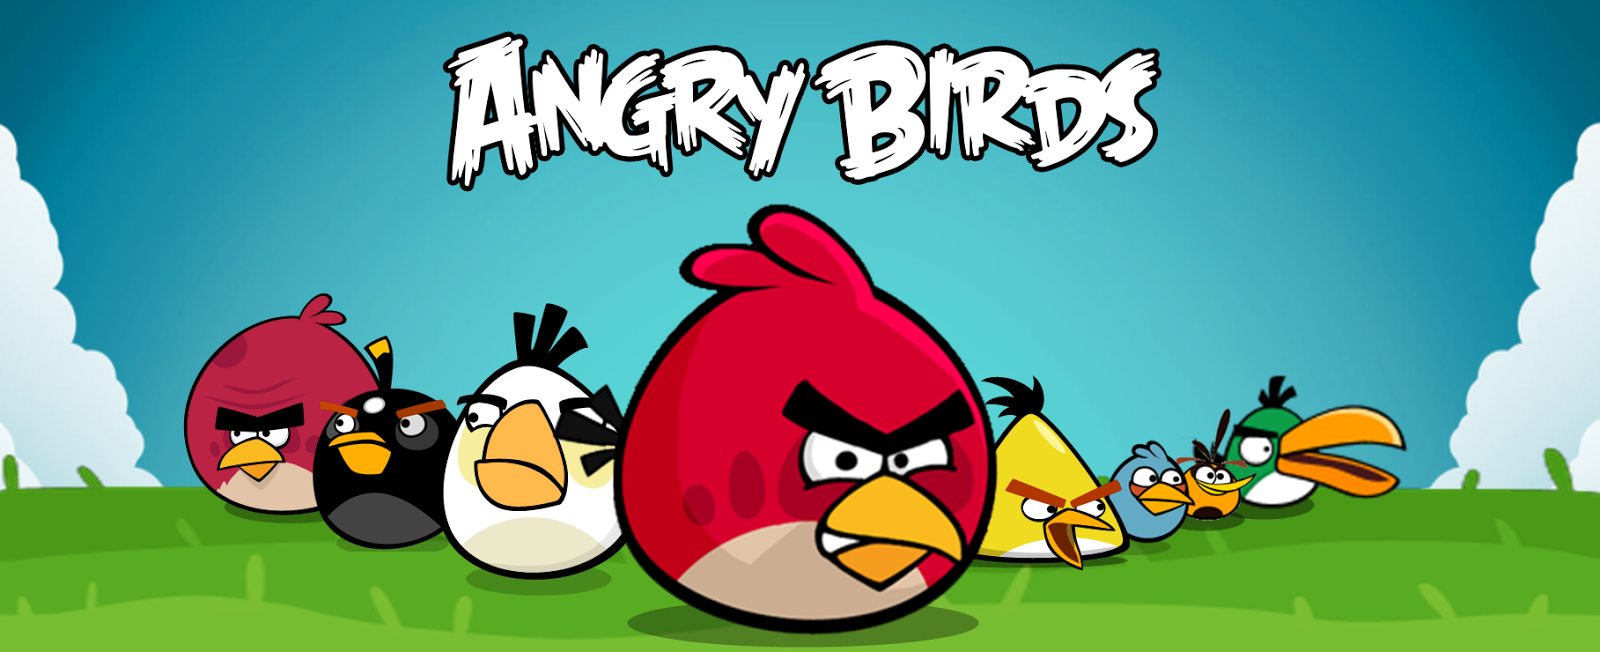 Kumpulan Gambar Angry Birds Gambar Lucu Terbaru Cartoon Animation